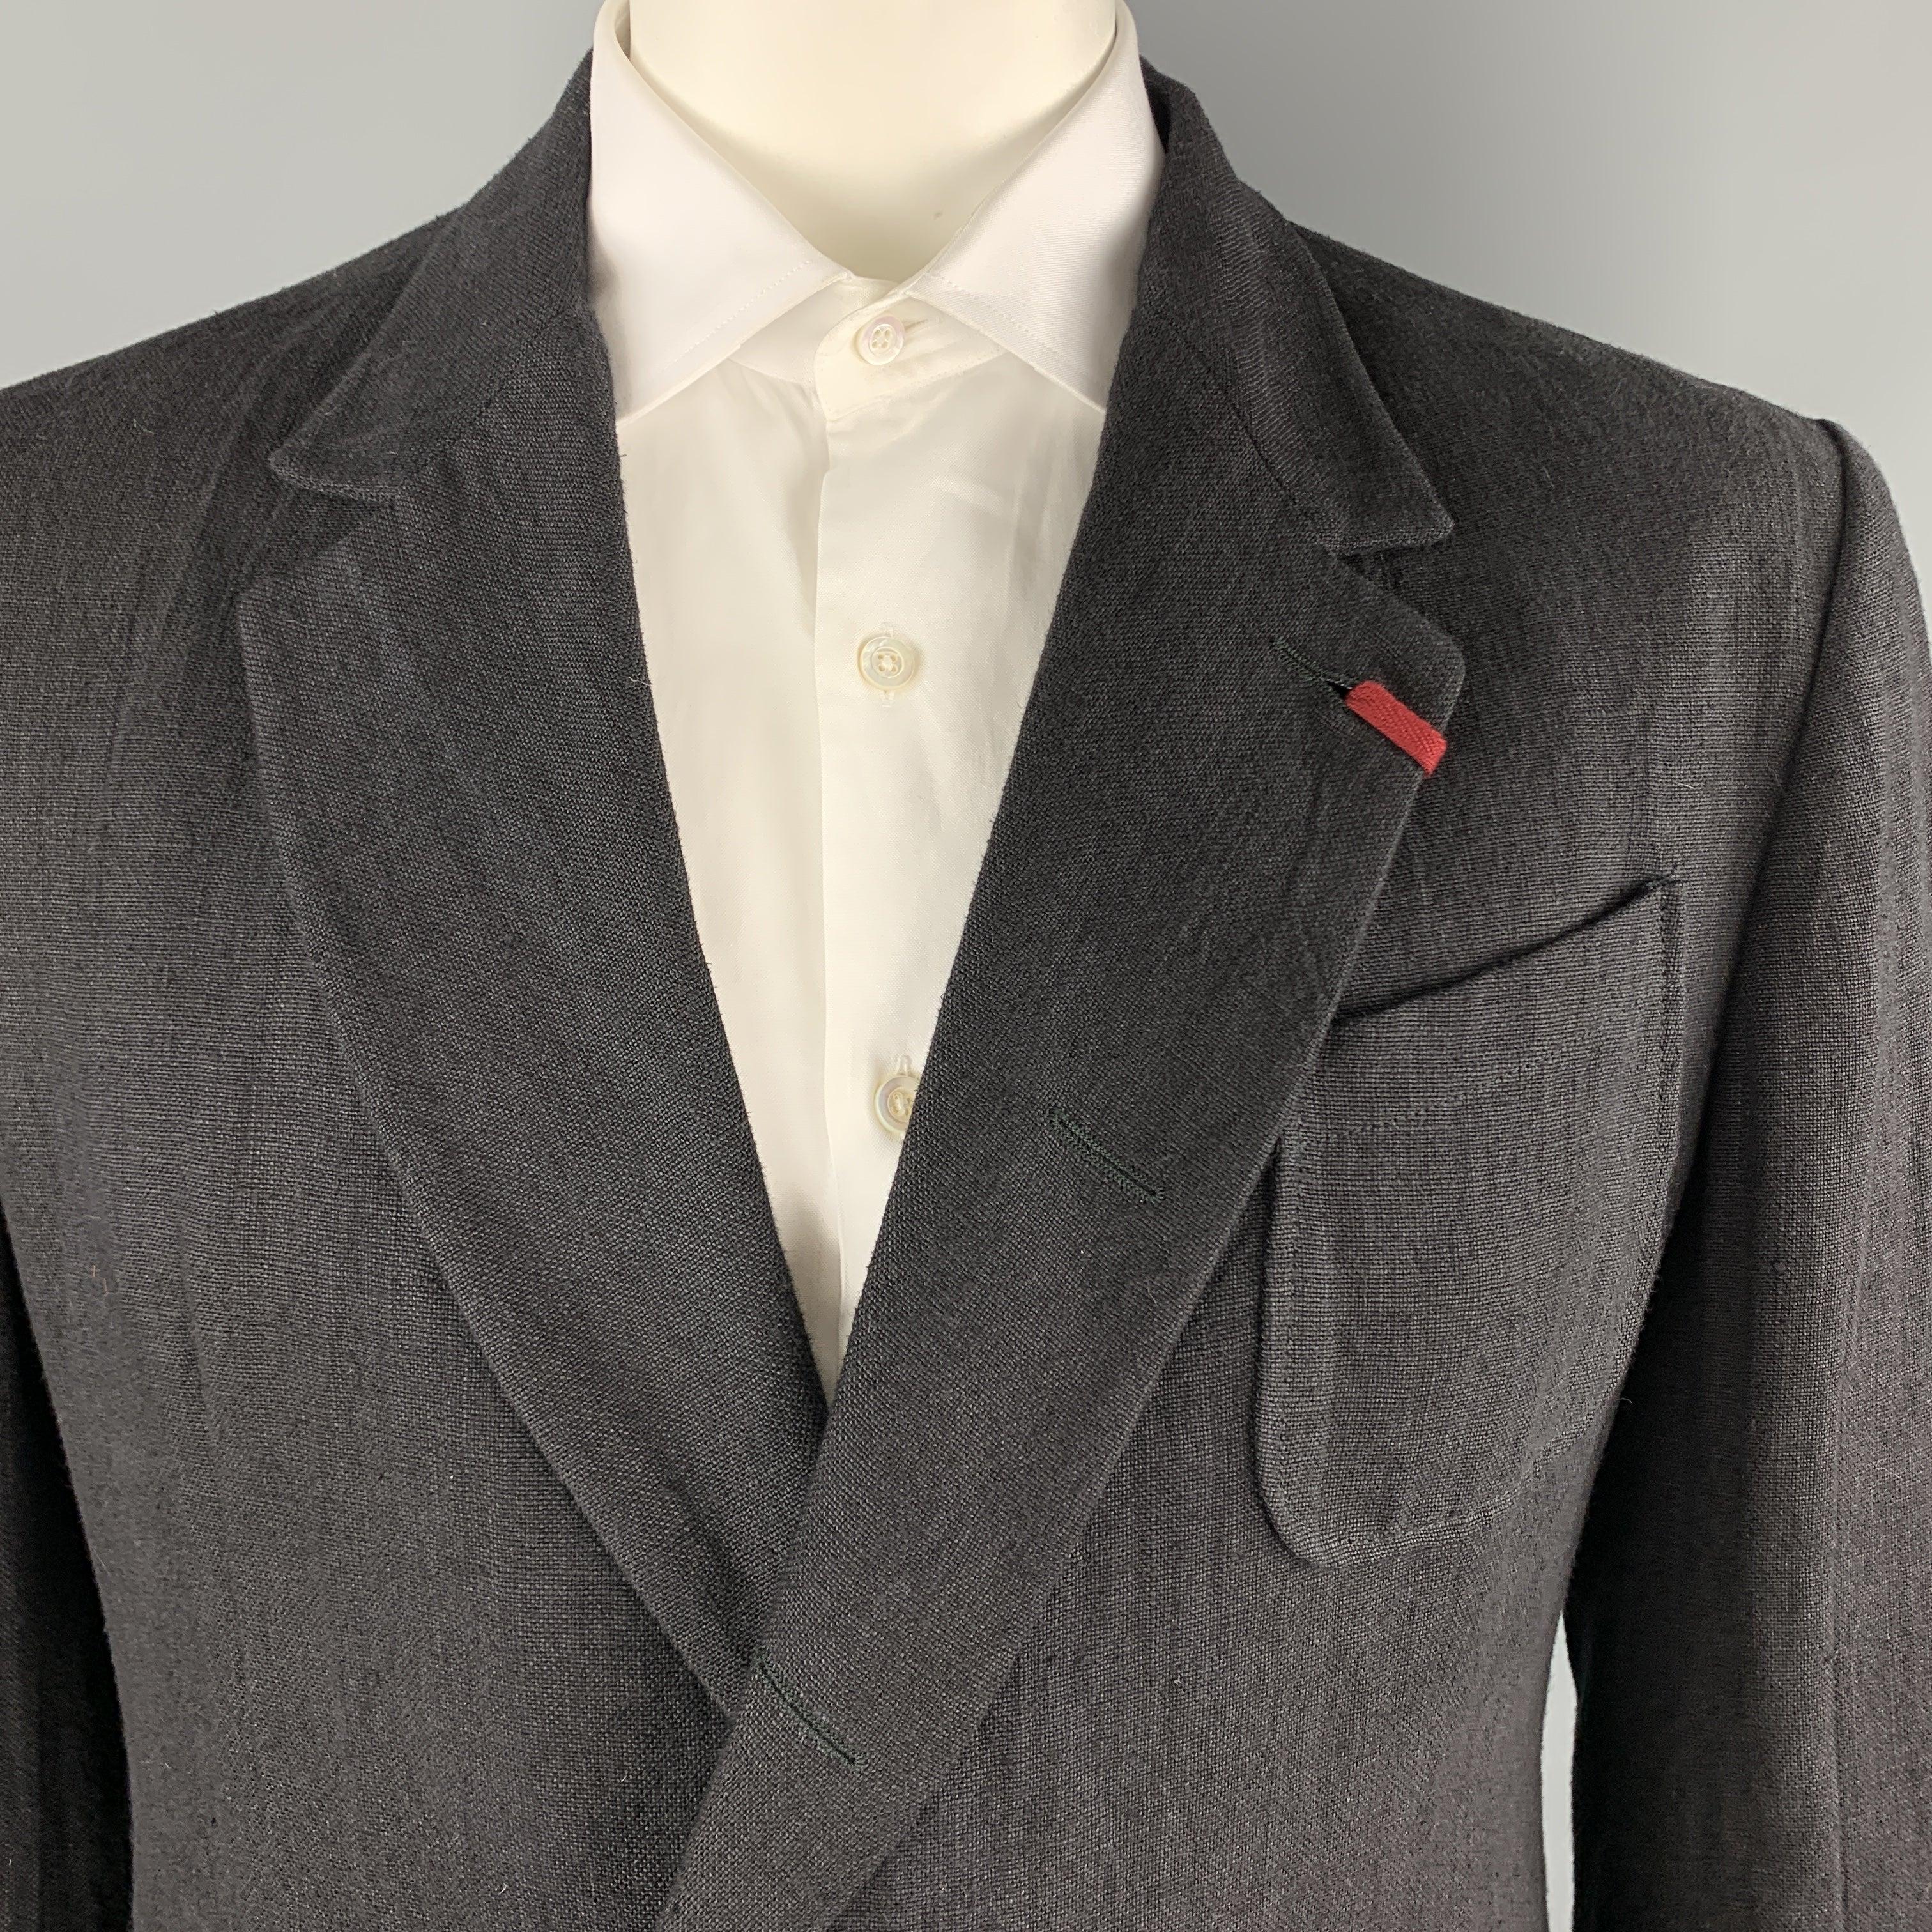 Le manteau de sport ALEXANDER MCQUEEN est réalisé en lin noir texturé et présente un revers à encoche avec patte de boutonnage rouge, un simple boutonnage, deux boutons cachés sur le devant, et une patte de boutonnage à l'avant. 
poignets à boutons